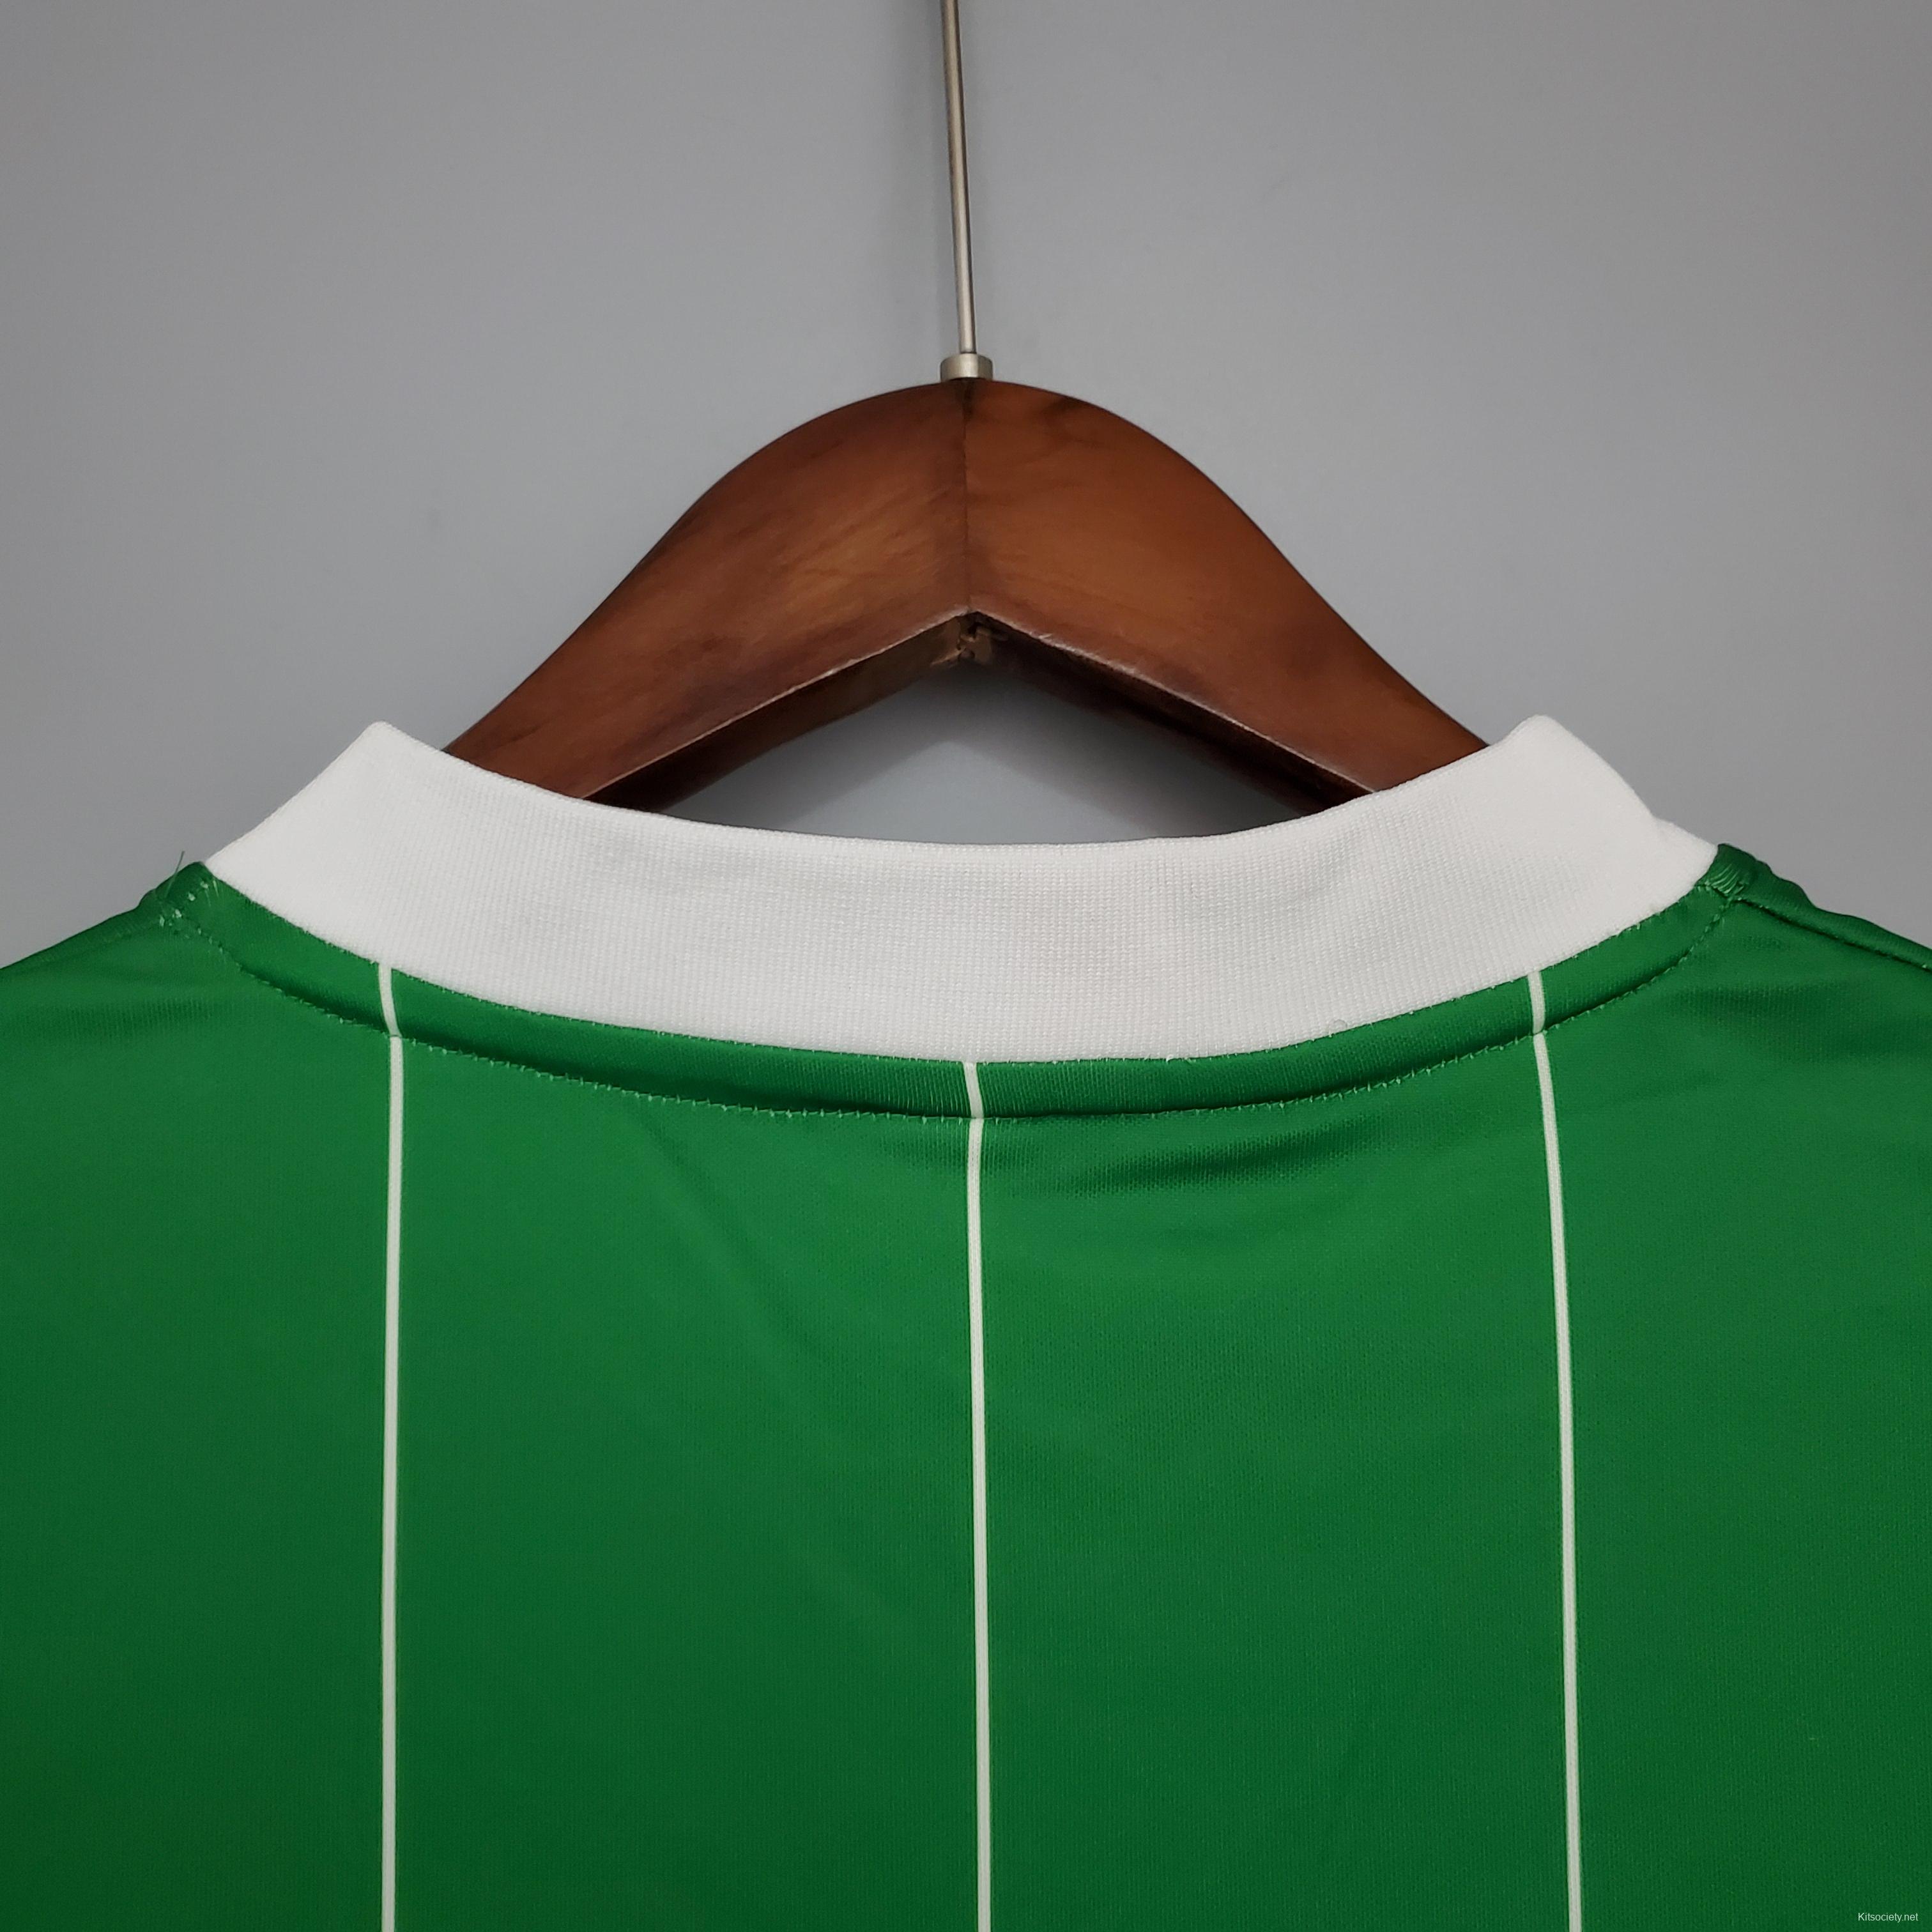 Cheap Retro Celtic Football Shirts / Soccer Jerseys